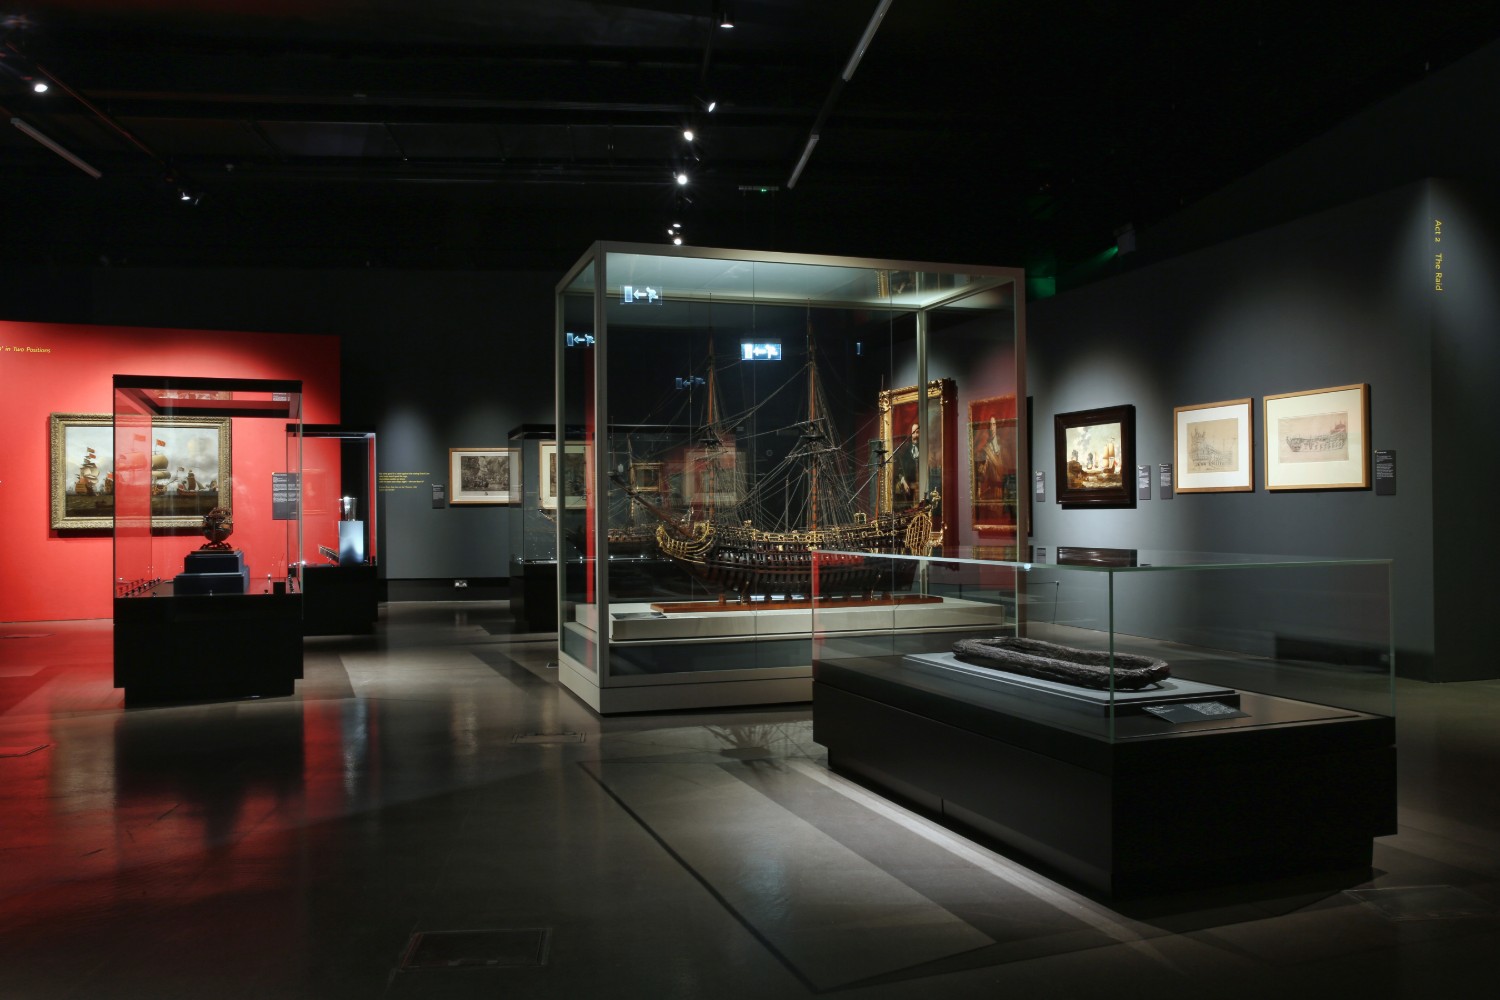 Dark museum interior